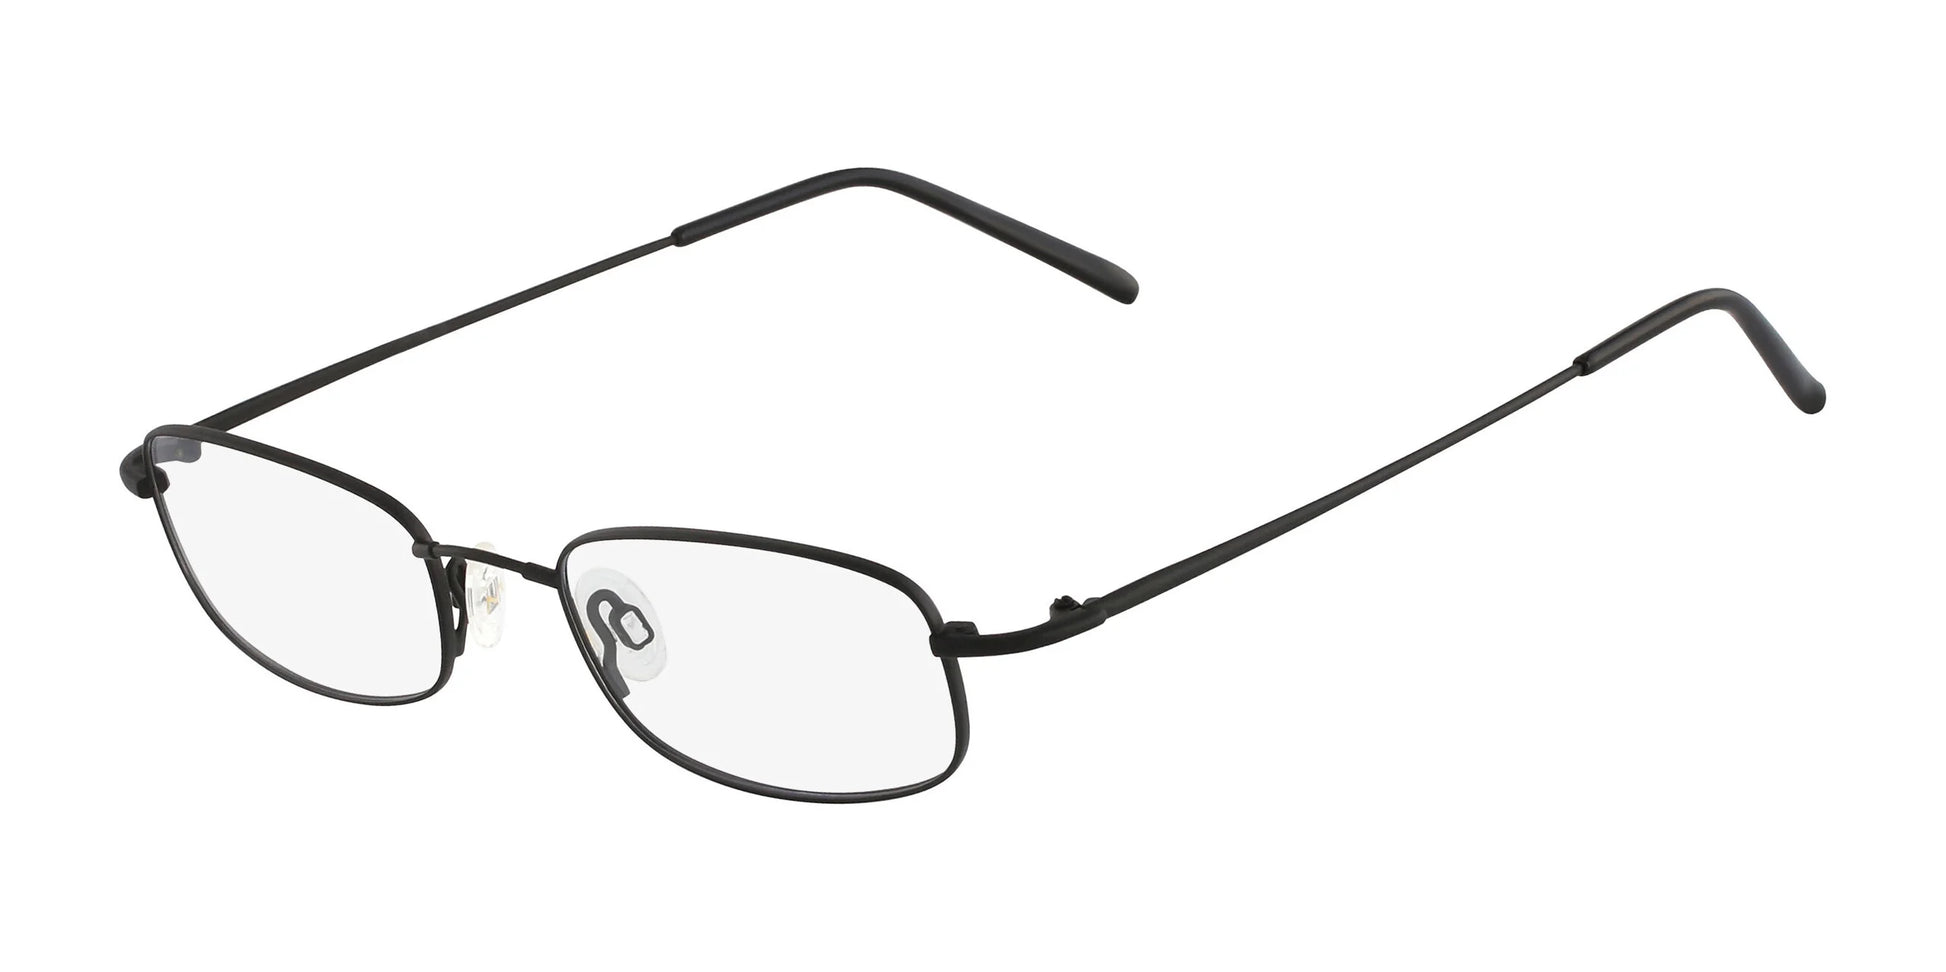 Flexon 603 Eyeglasses Mat Black